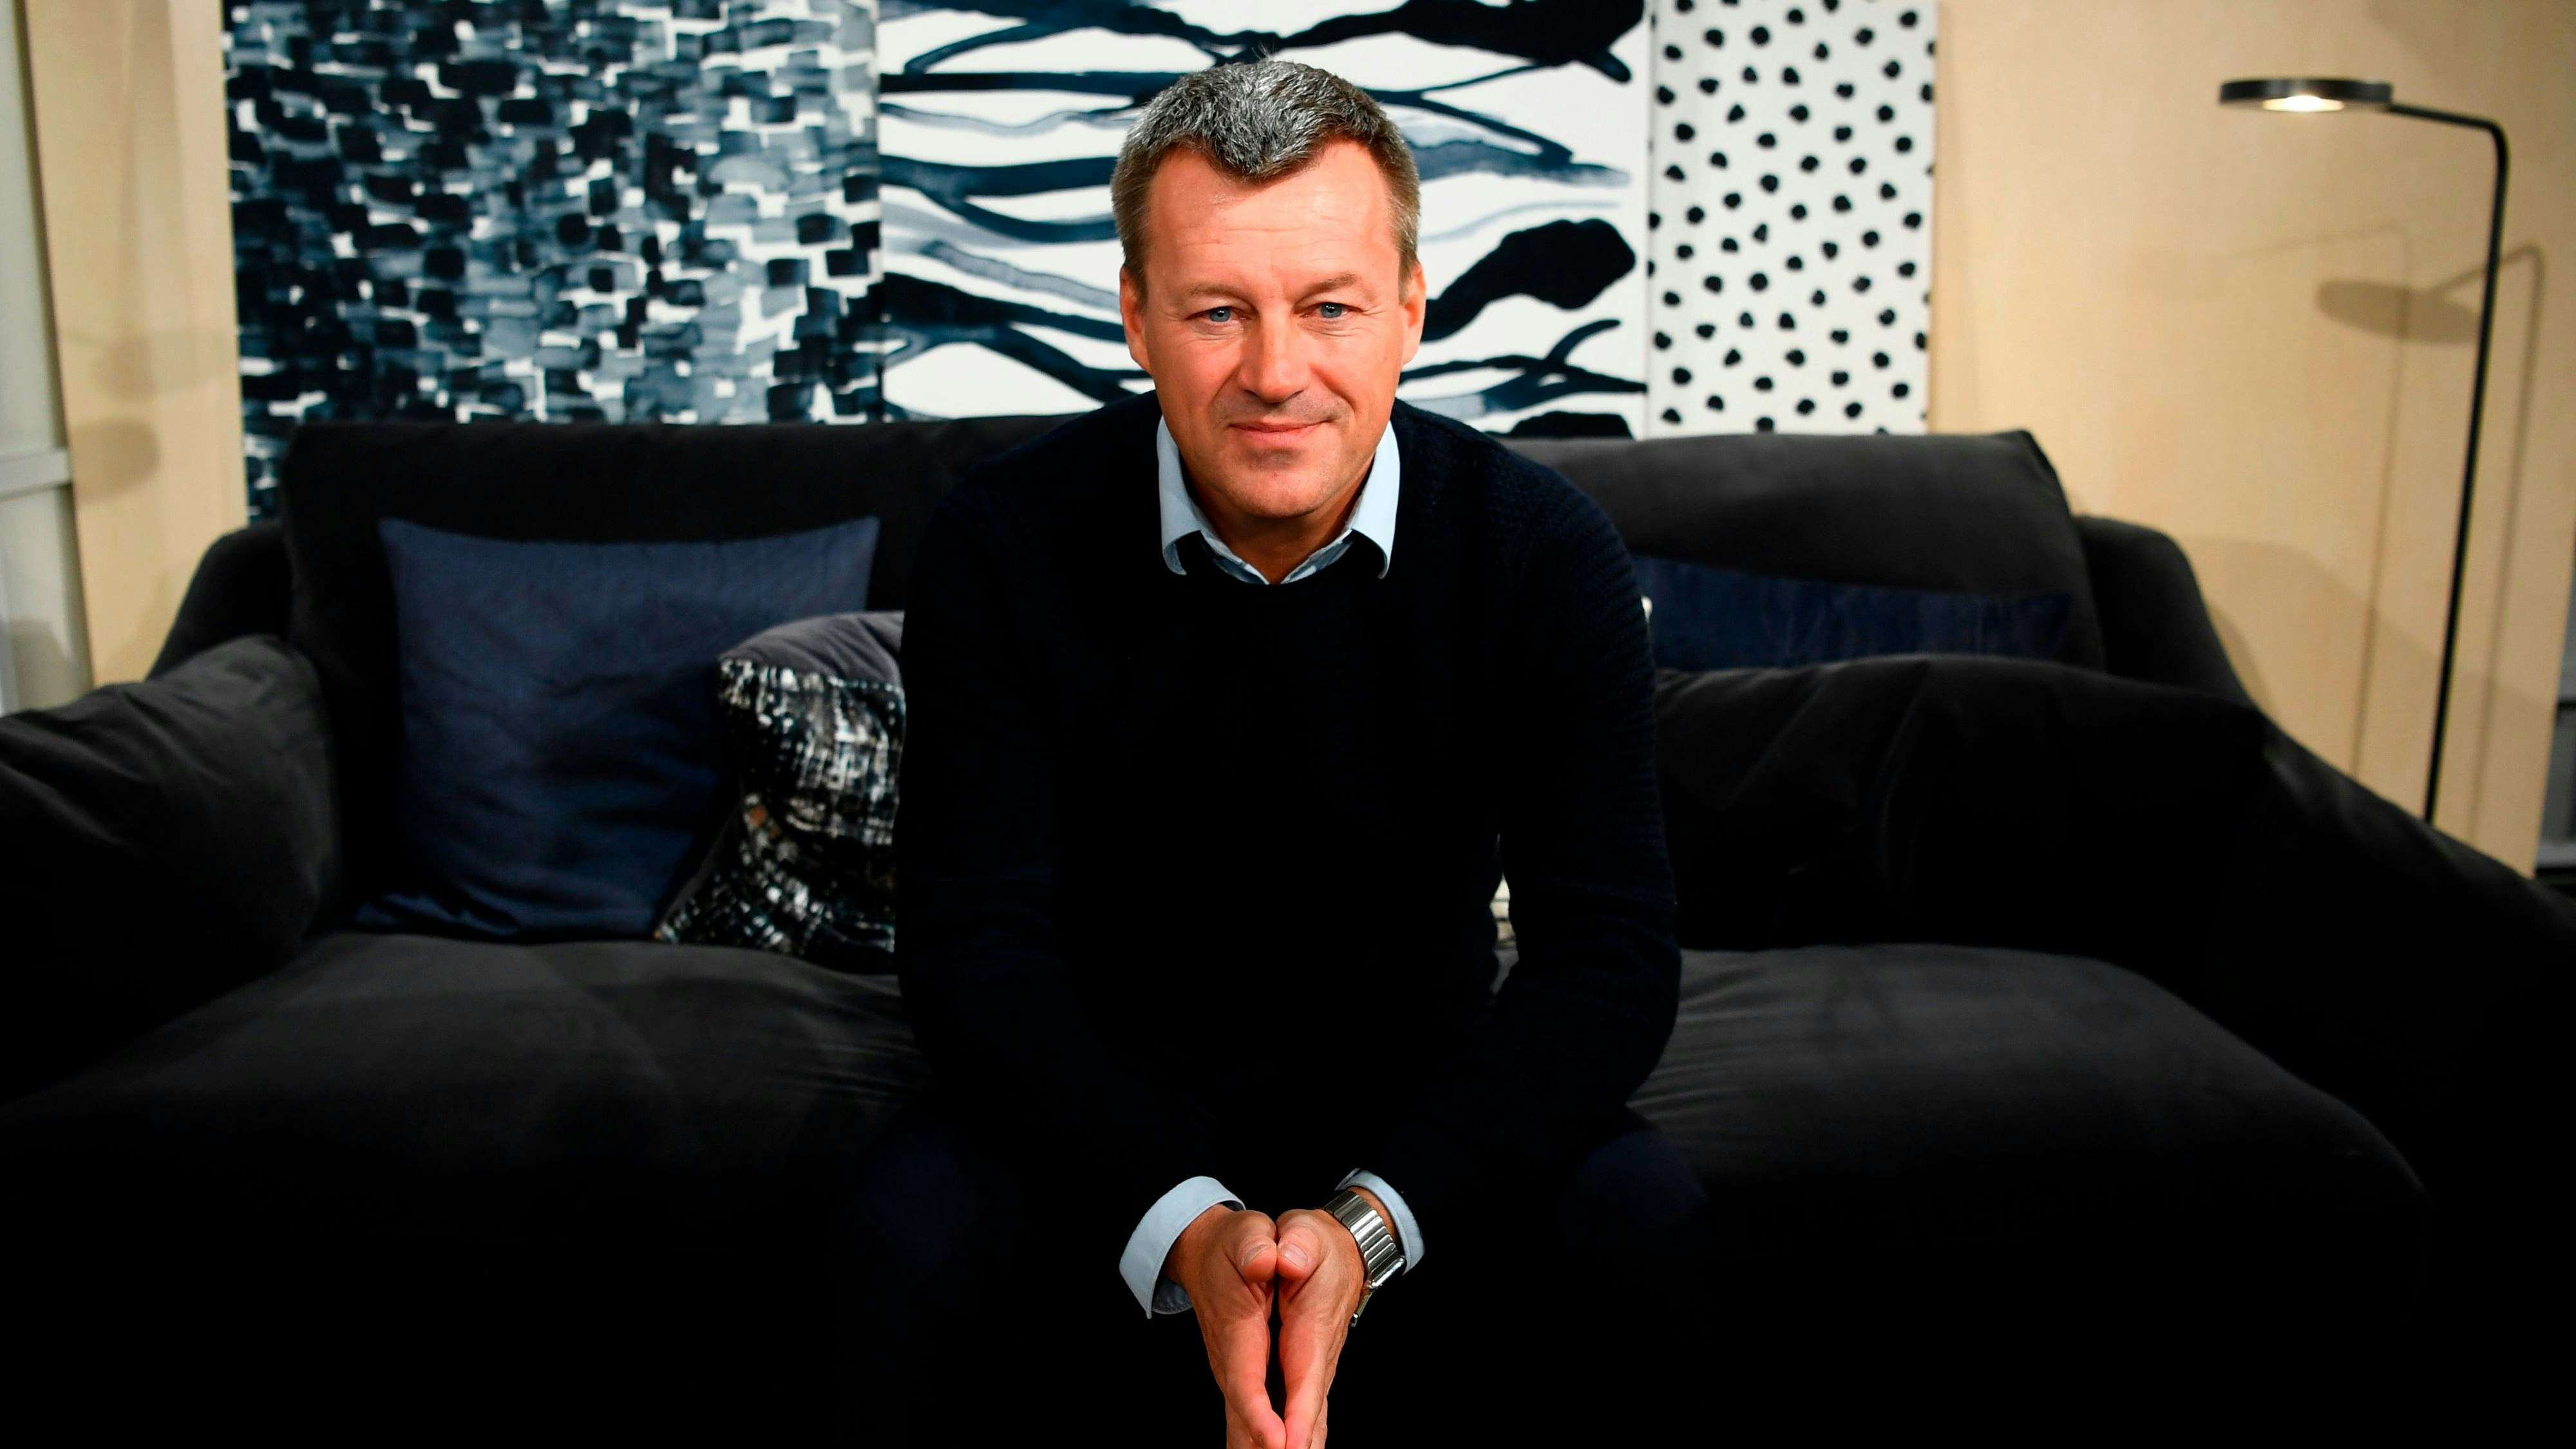 Jesper Brodin arbeitet seit 20 Jahren bei Ikea, seit 2017 ist er CEO des schwedischen Interior-Riesen.